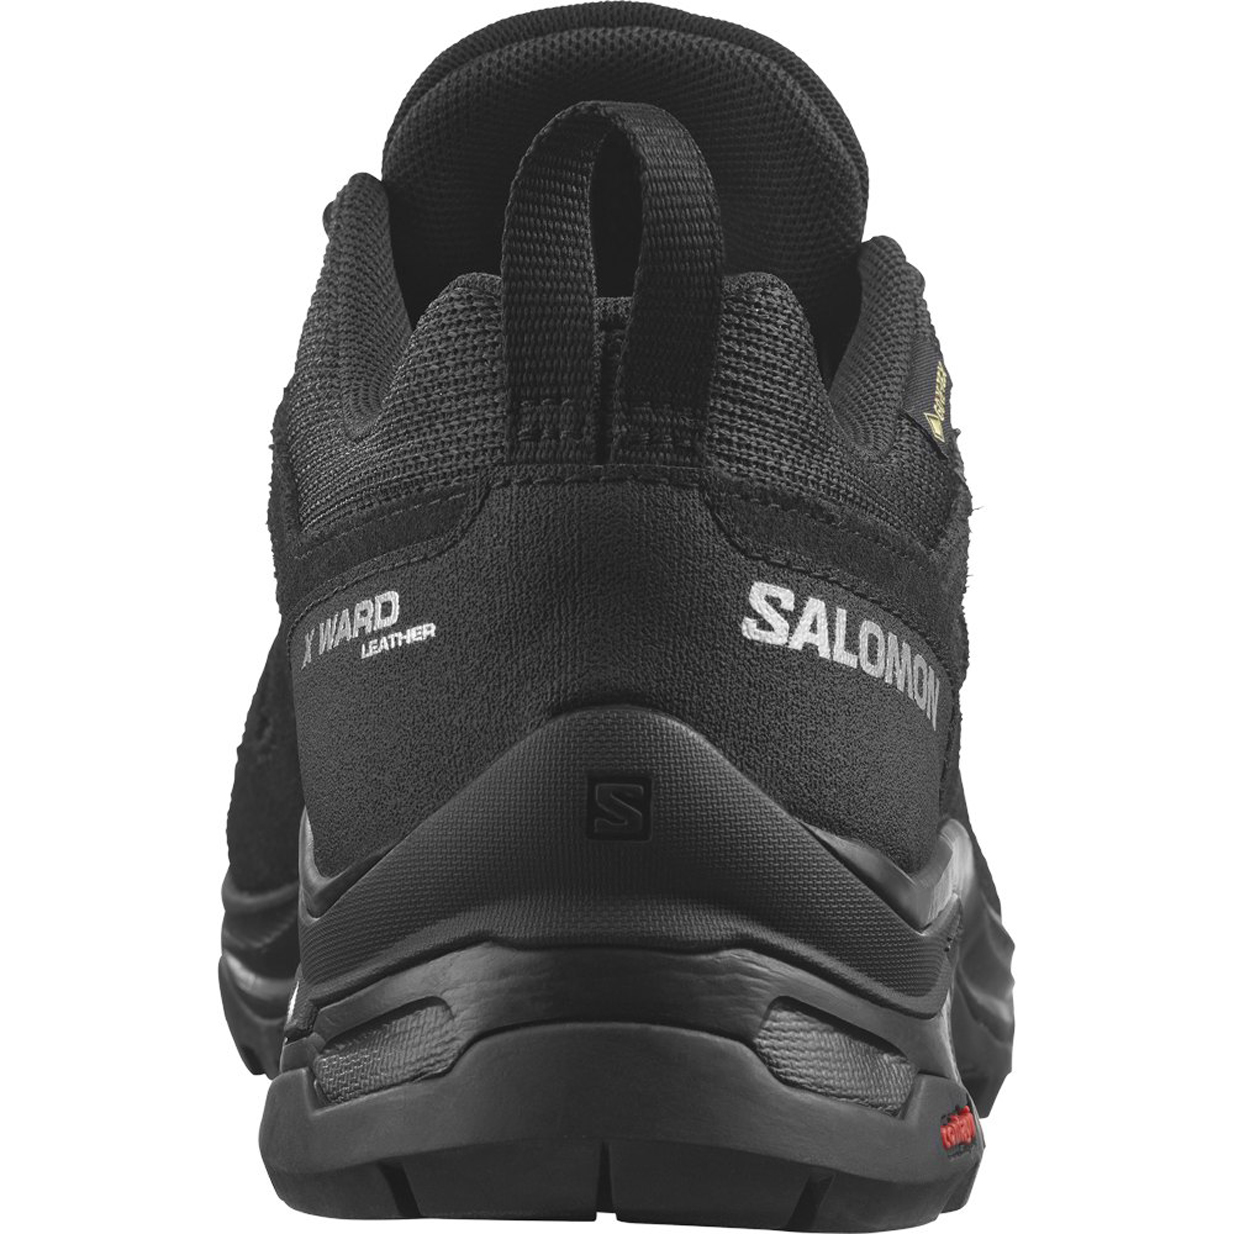 Zapatillas Salomon X Ward Leather GORE-TEX negro